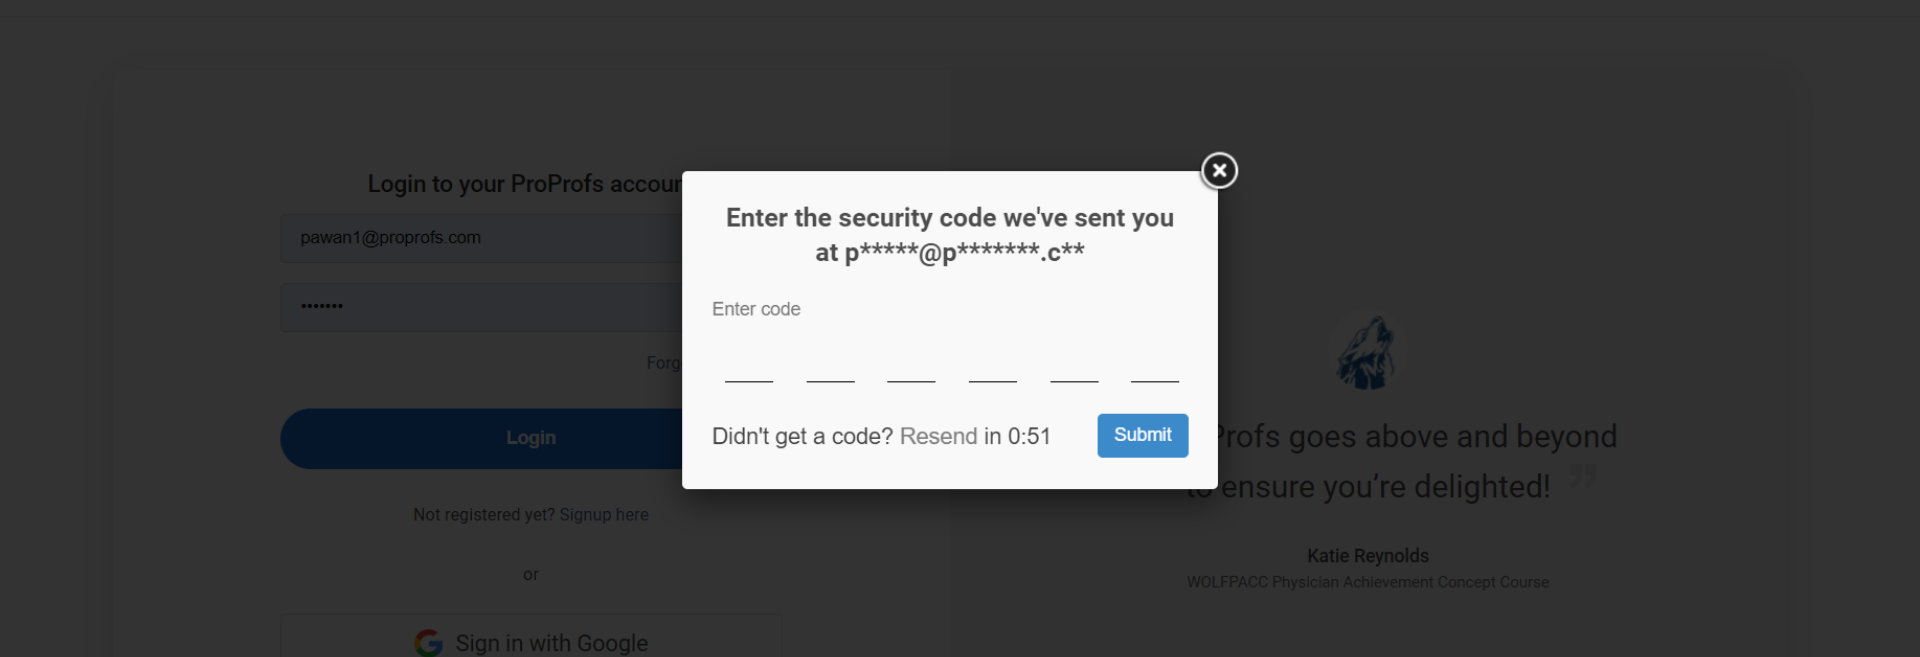 Proprofs Security code